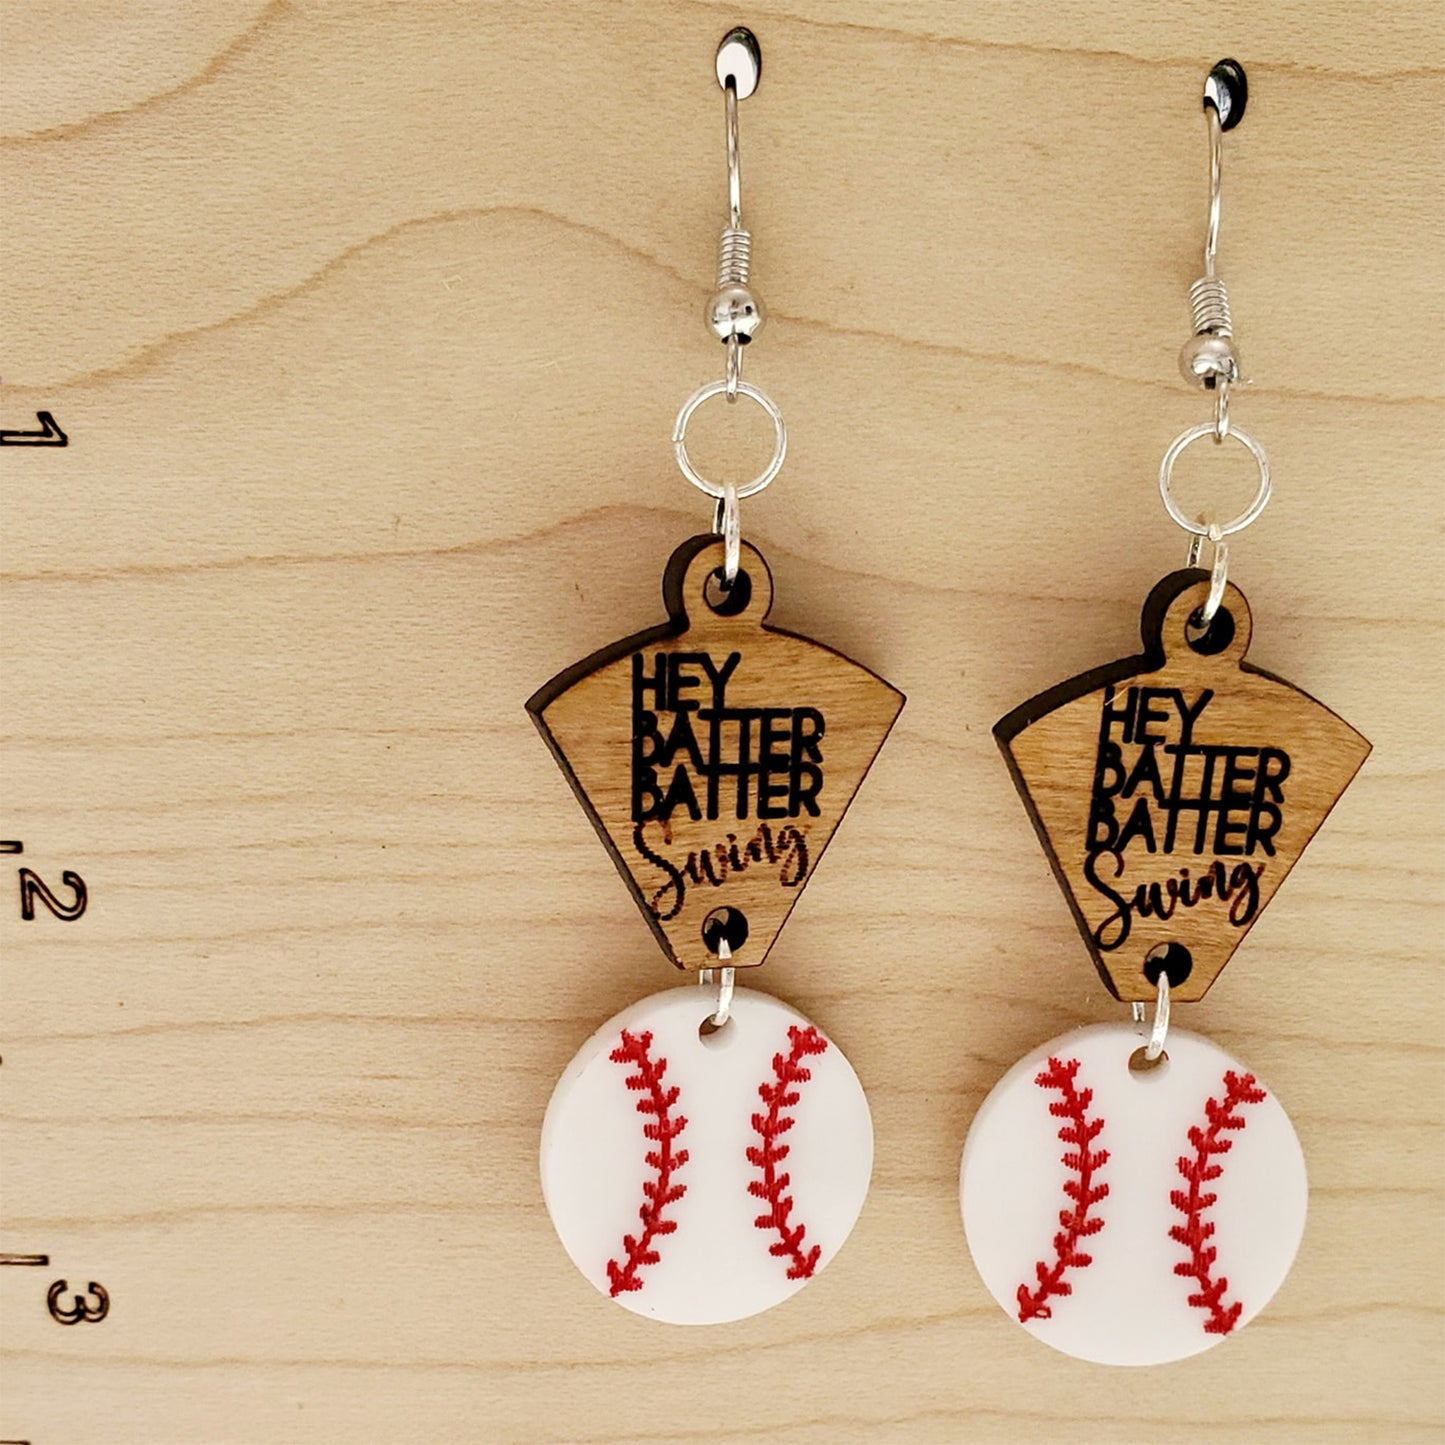 Hey Batter Batter Swing 2-Part Baseball Earrings